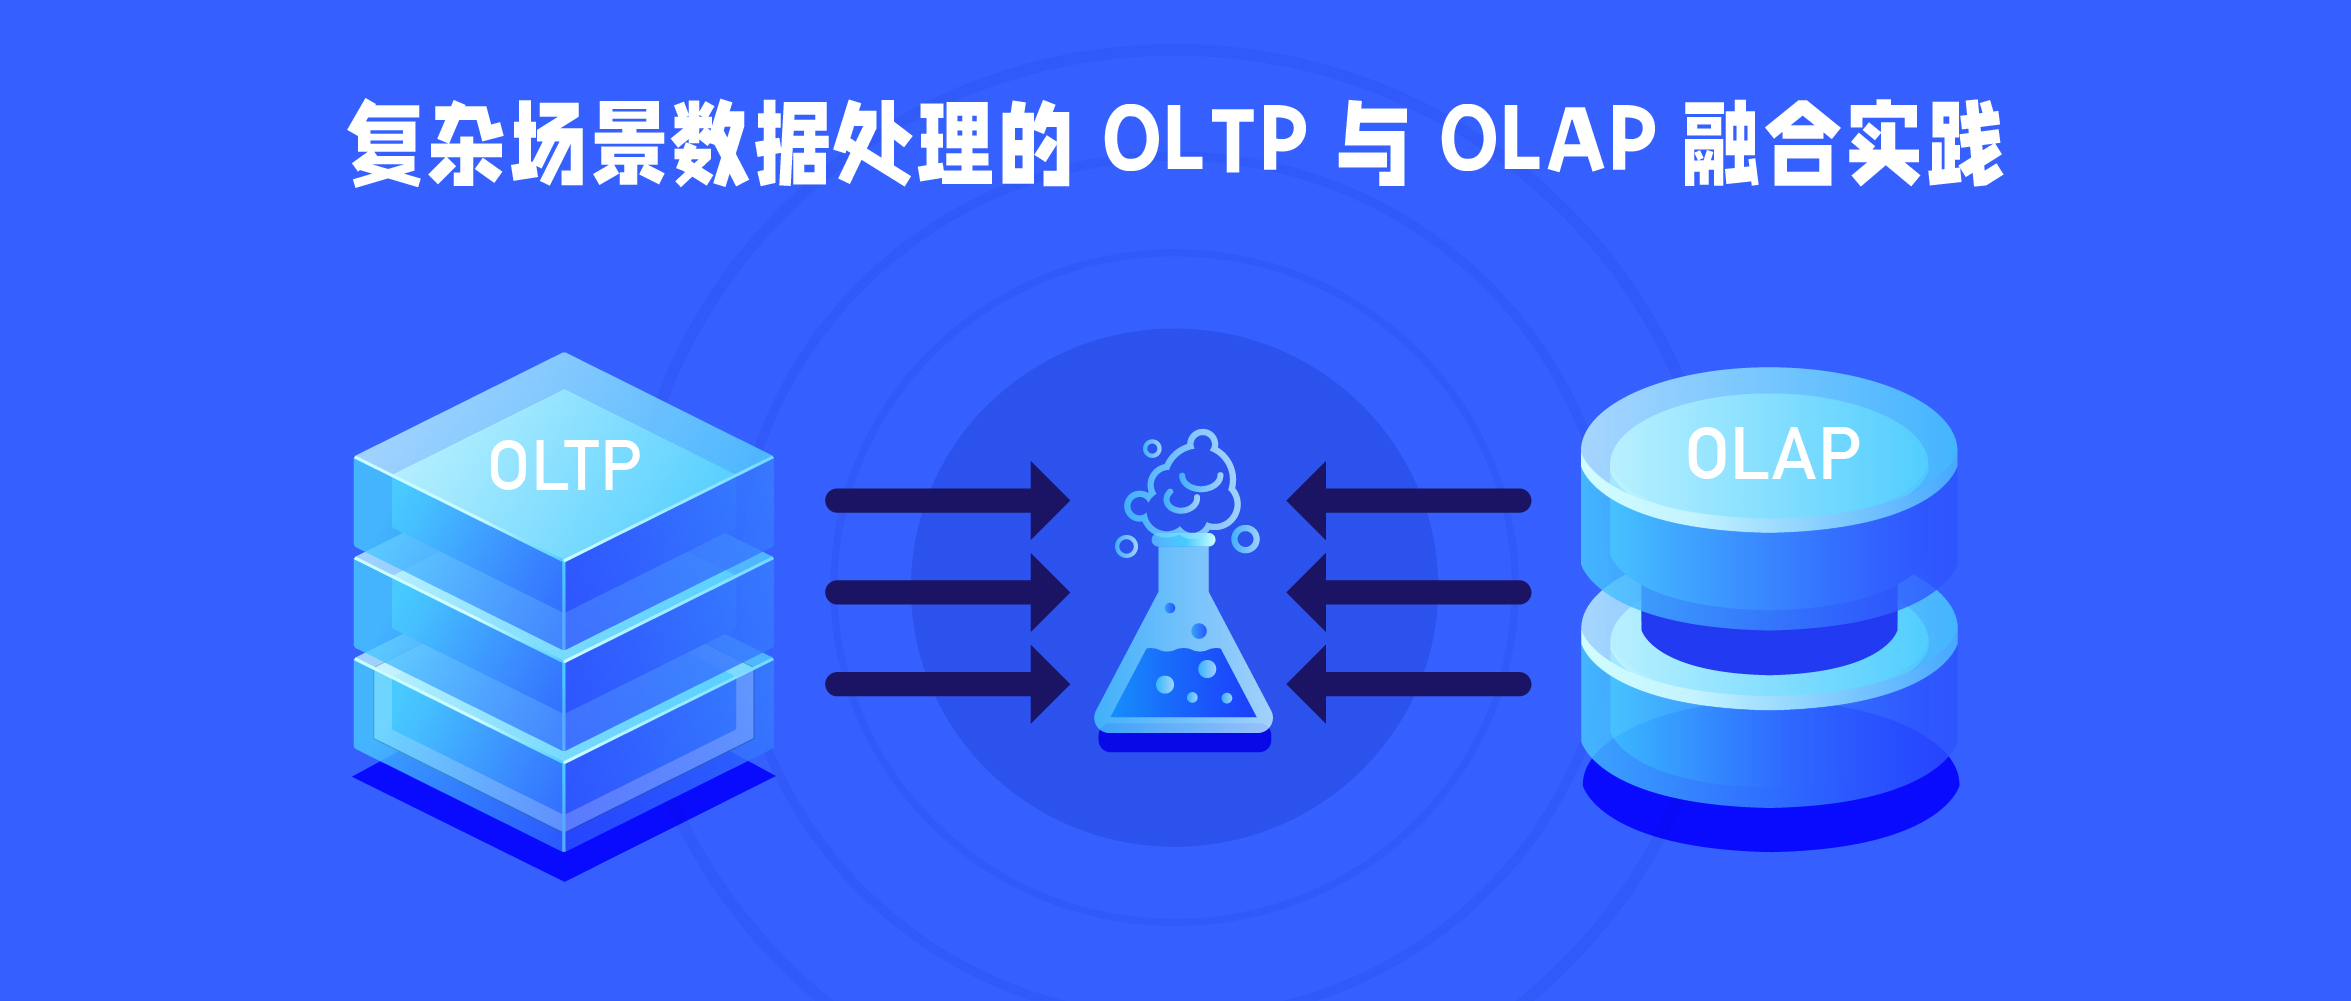 複雜場景數據處理的 OLTP 與 OLAP 融合實踐